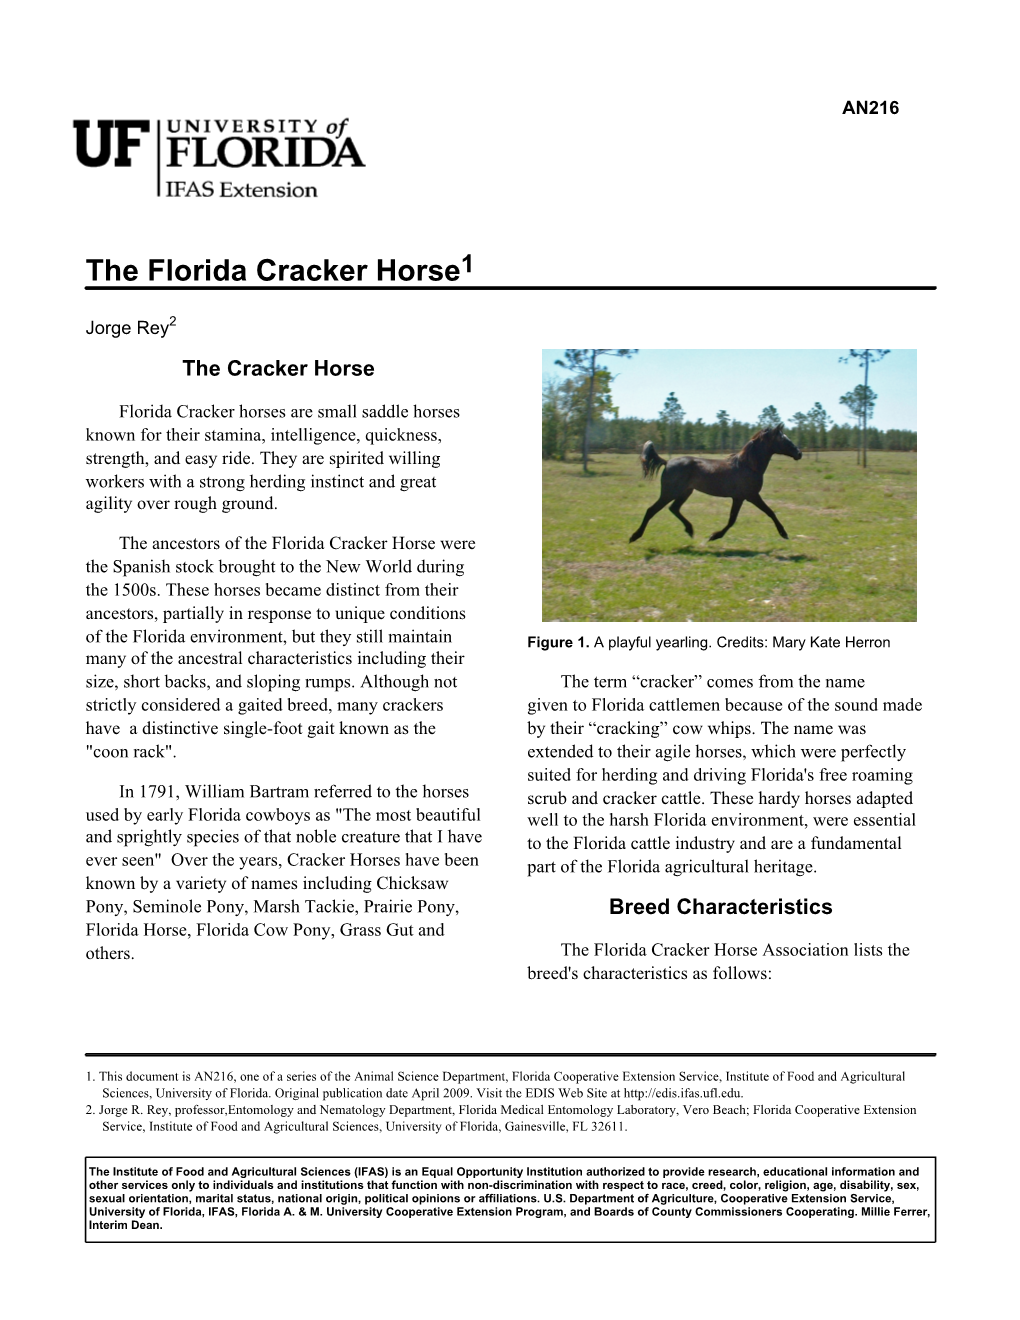 The Florida Cracker Horse1